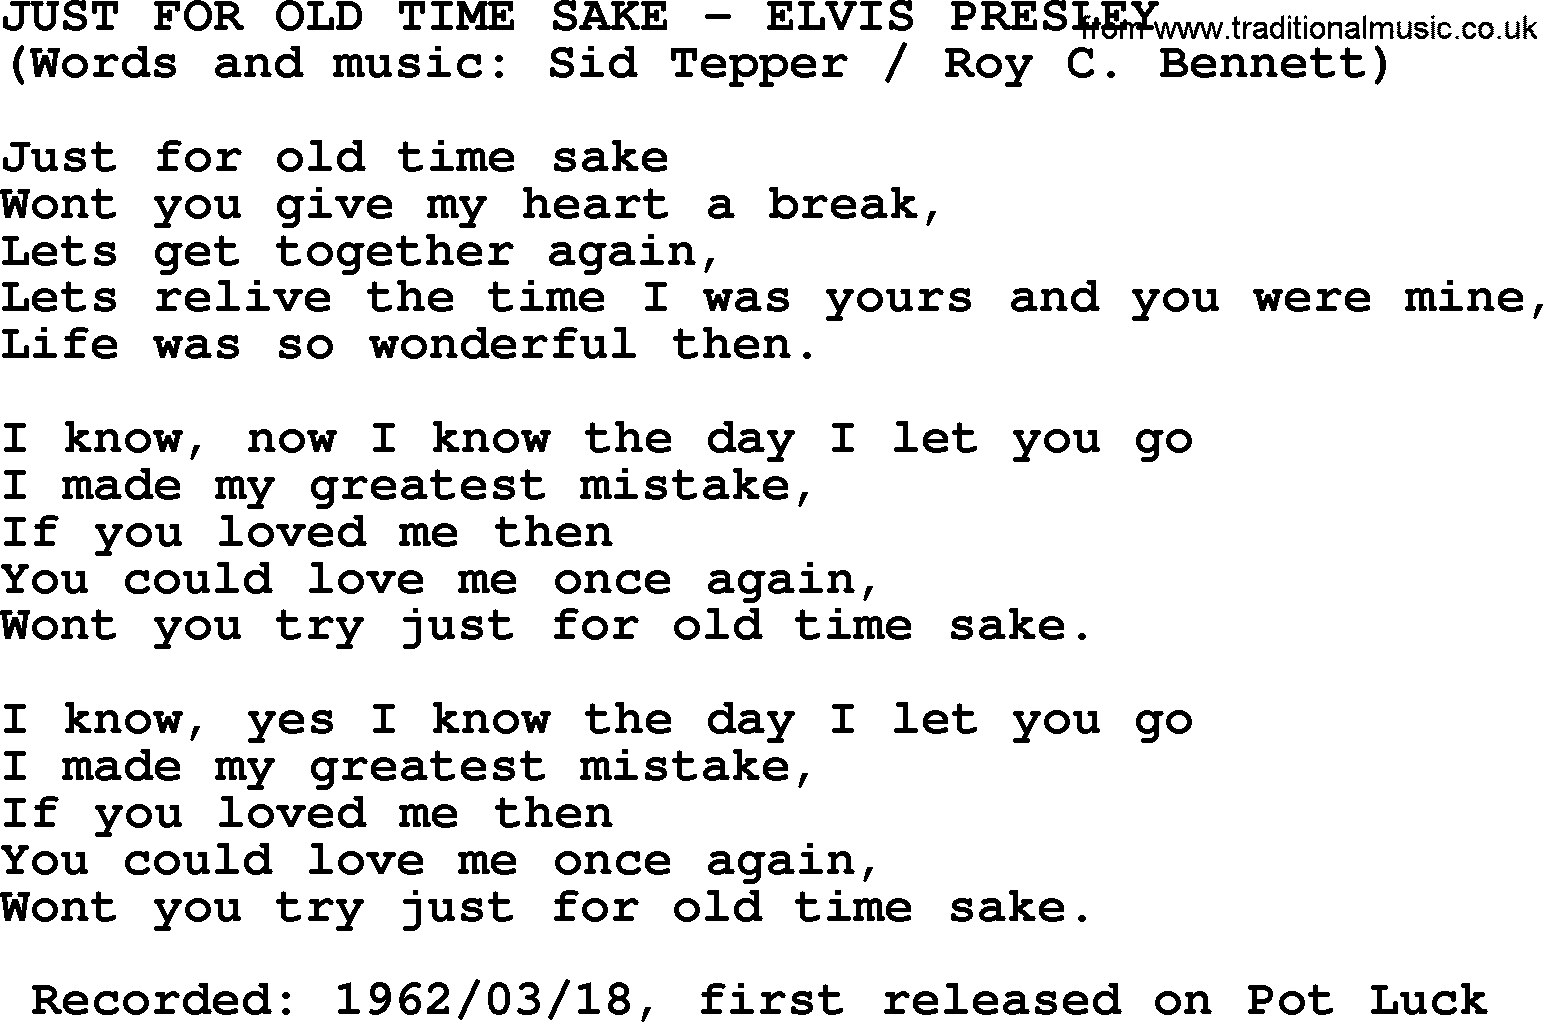 Elvis Presley song: Just For Old Time Sake lyrics